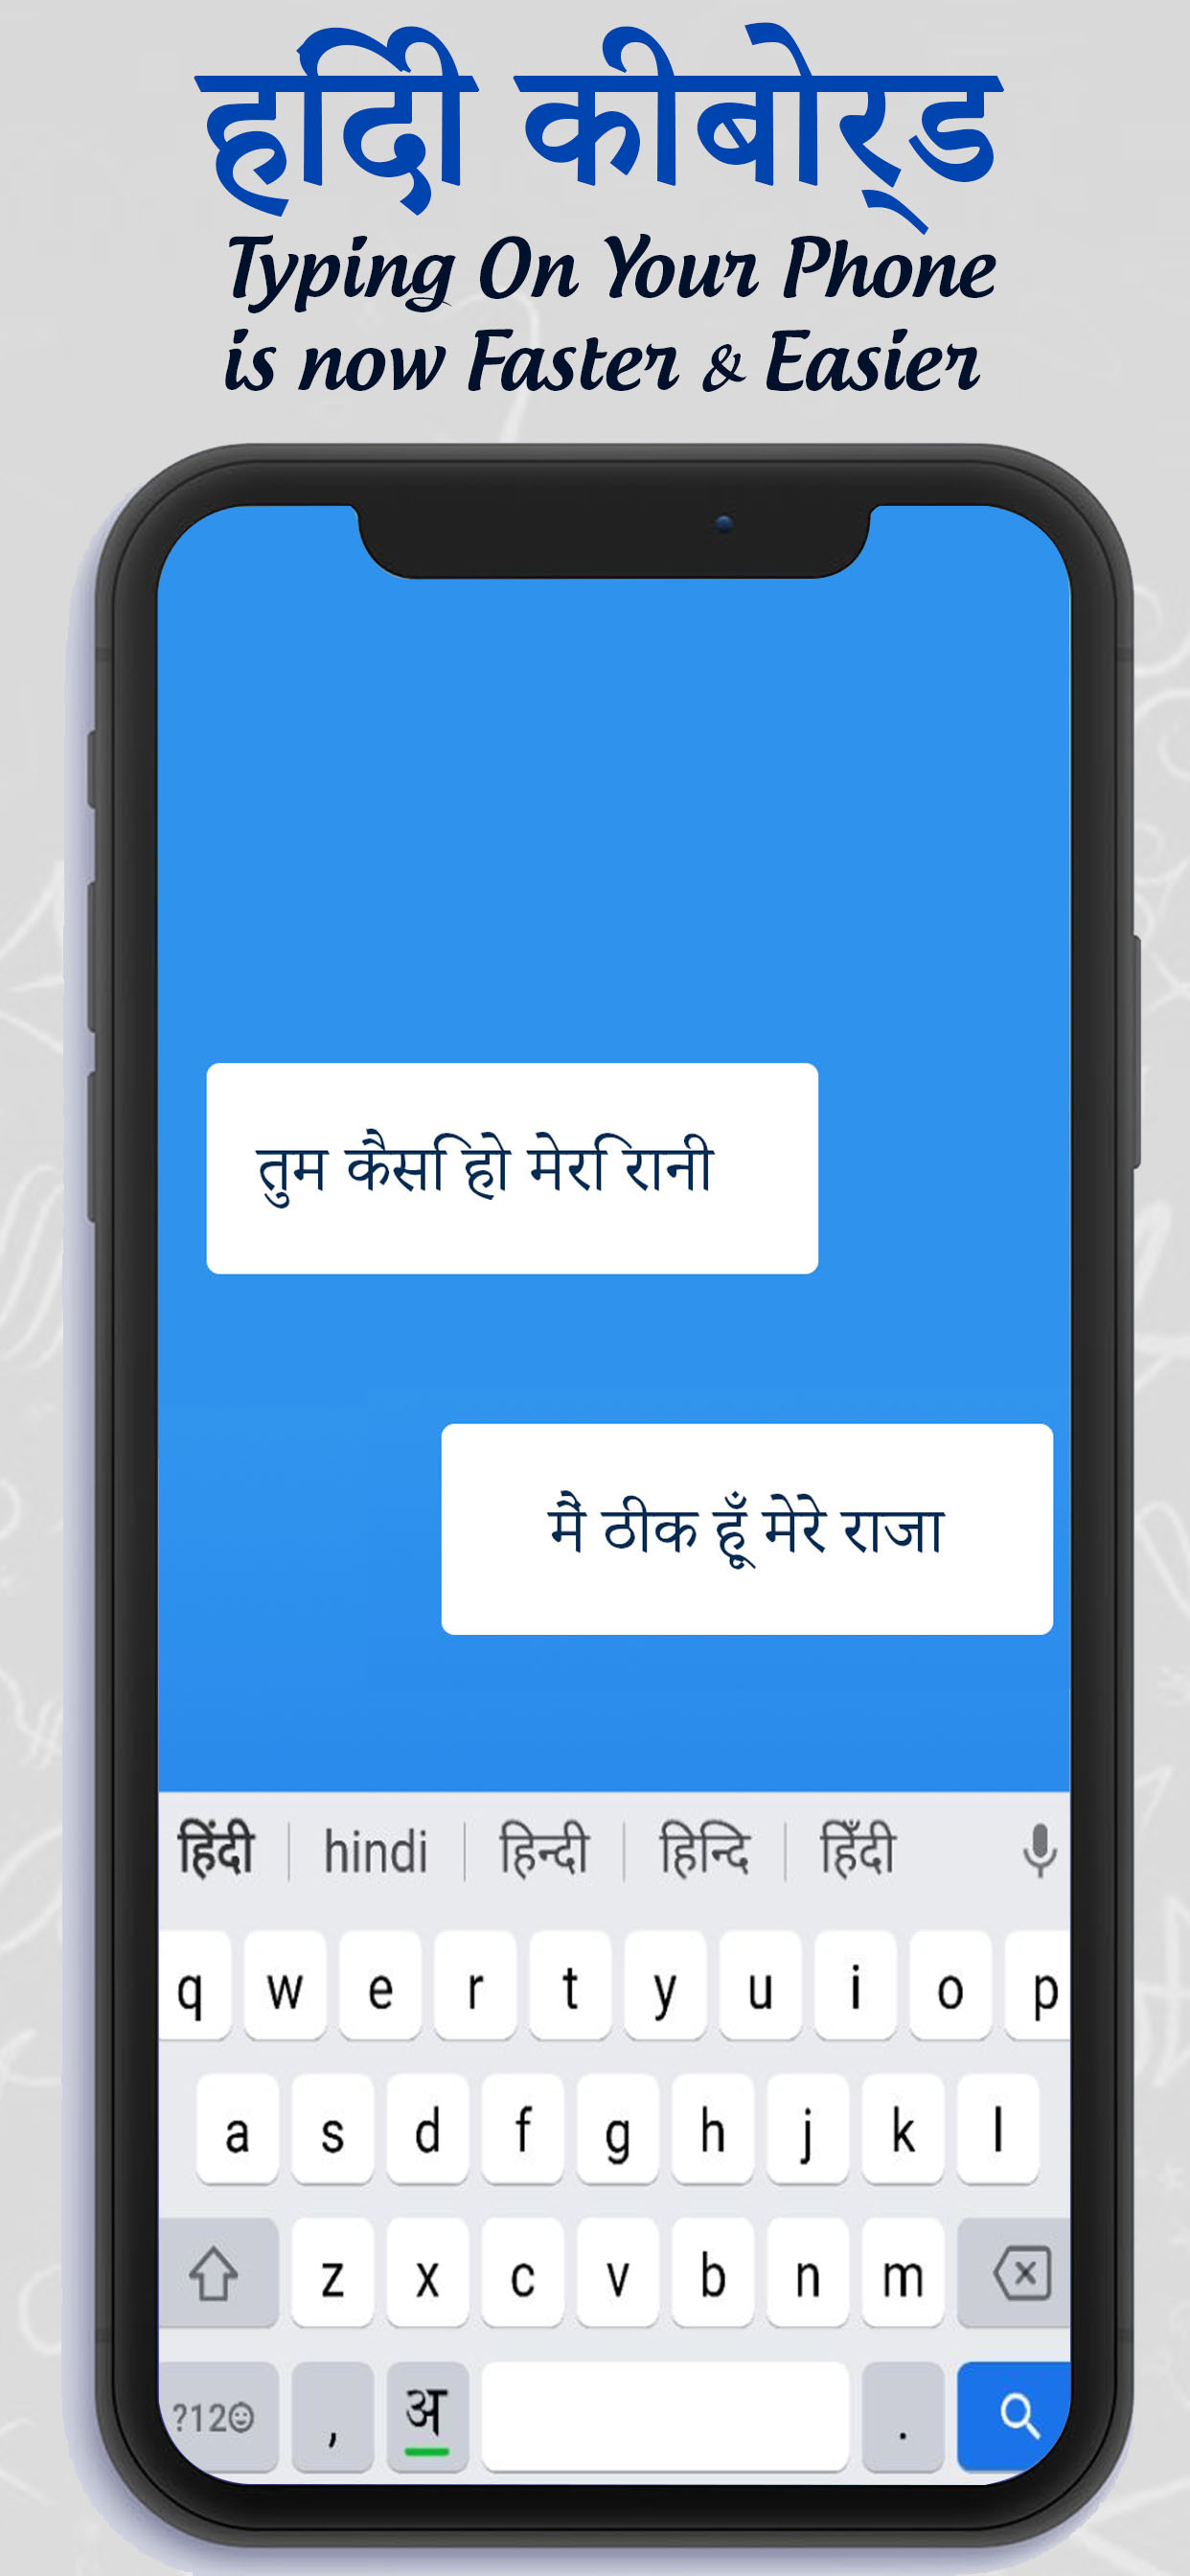 Hindi Easy Keyboard